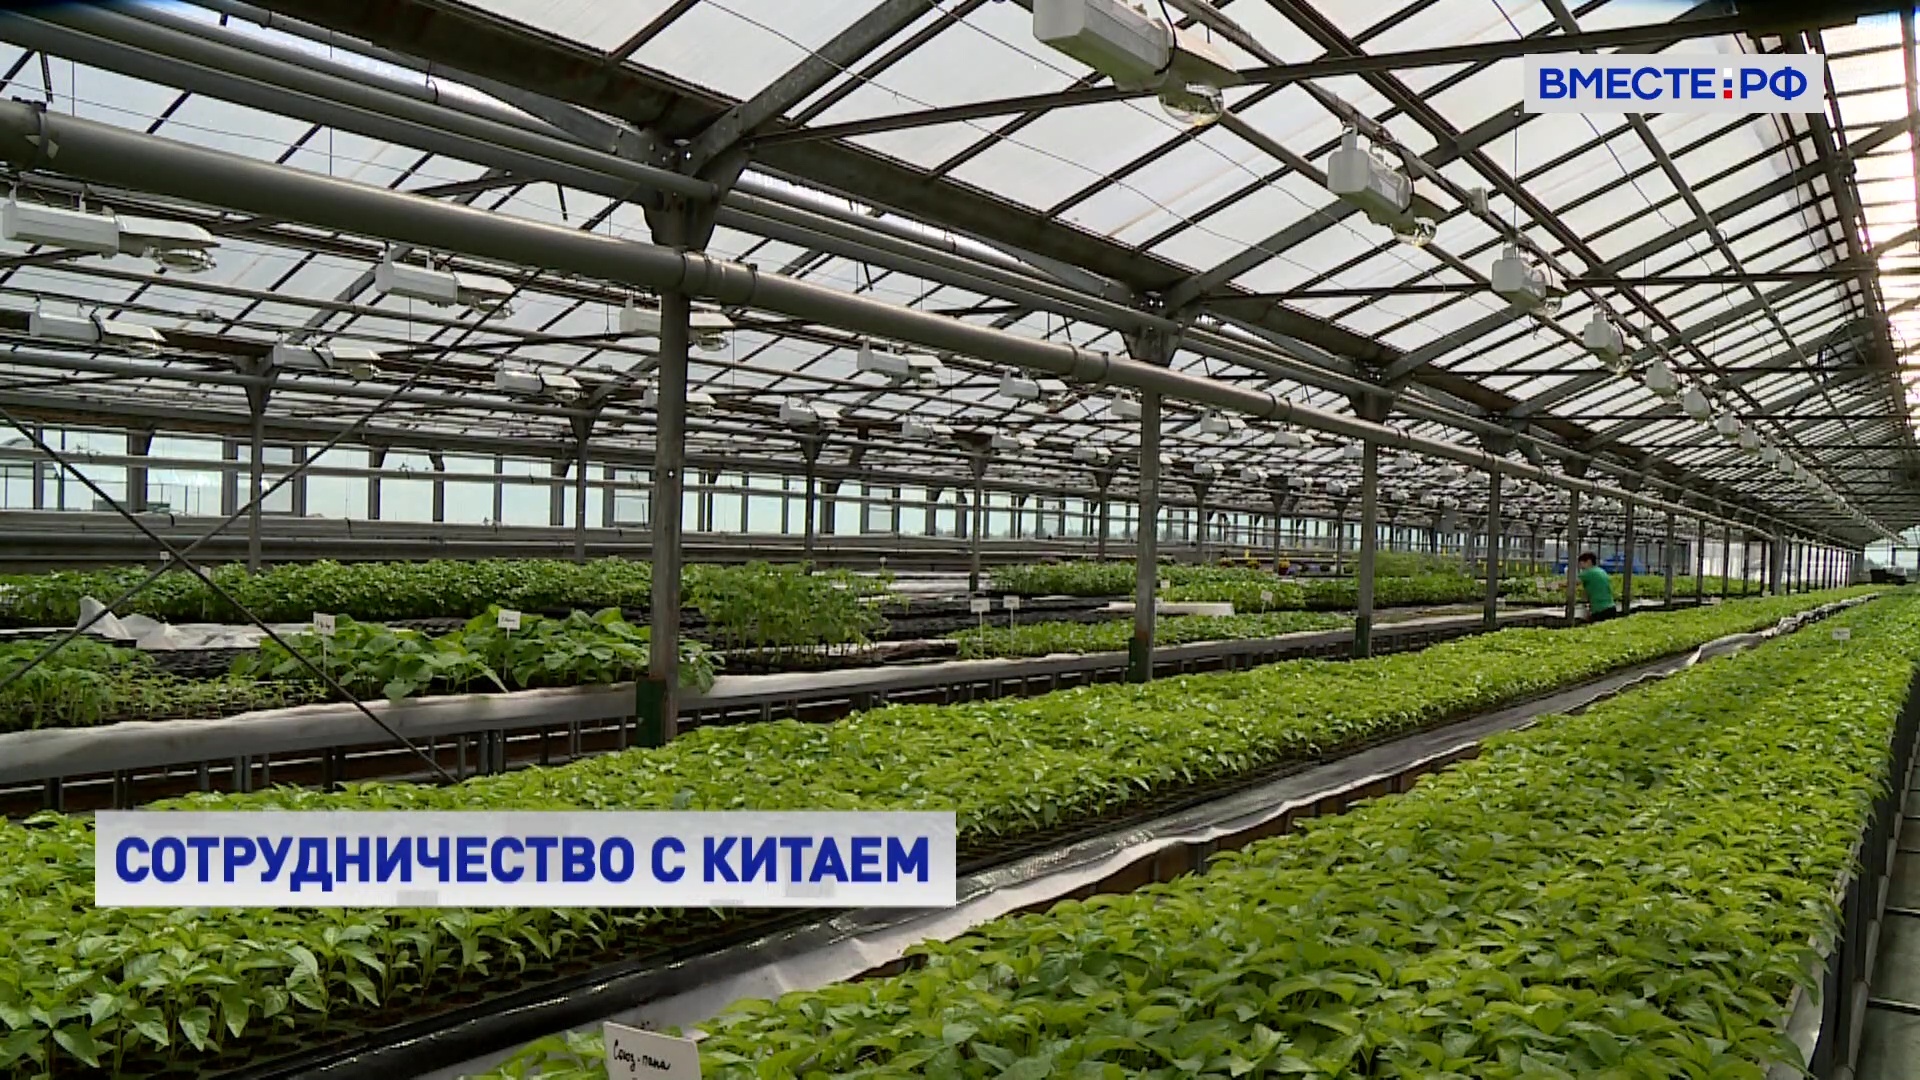 Россия и Китай планируют развивать сотрудничество в сфере лекарственного растениеводства